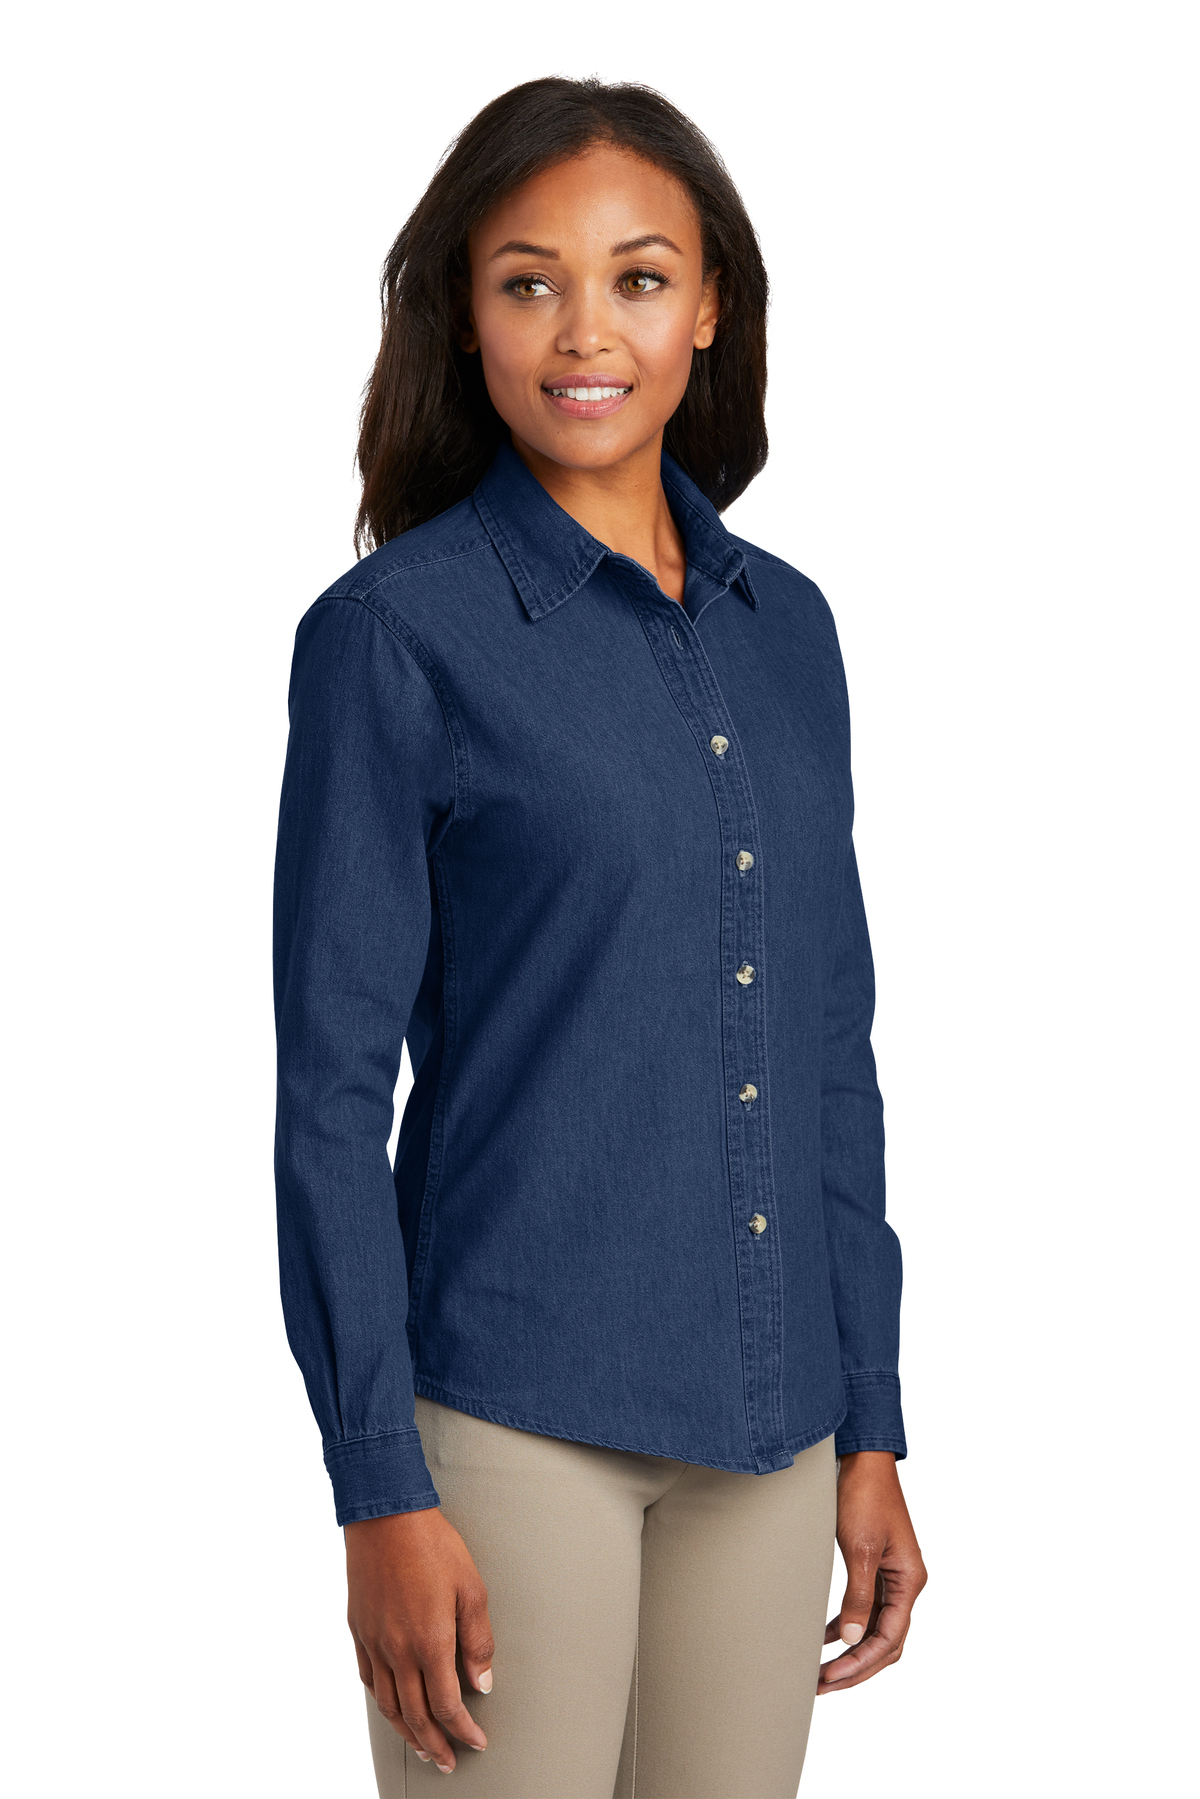 JUMP USA Women Regular Fit Blue Casual Denim Shirt